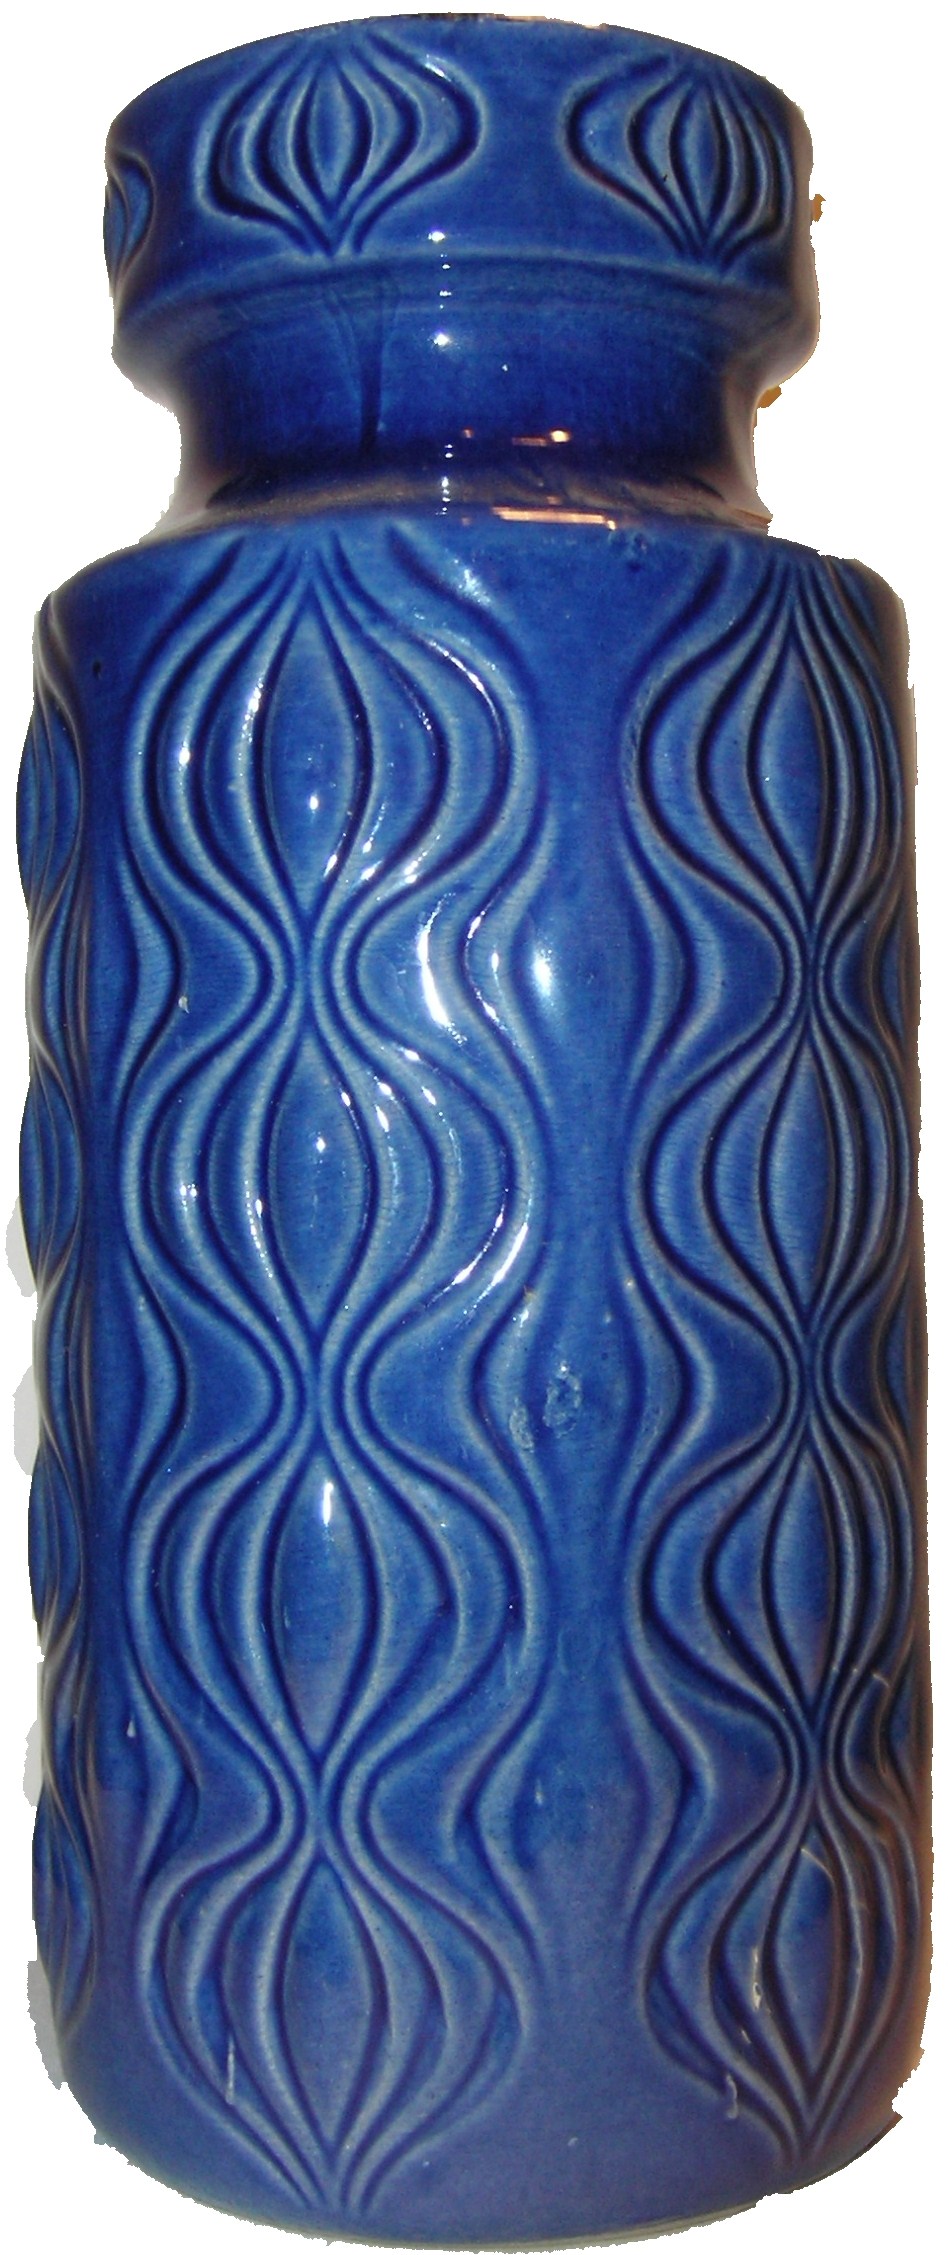 色移り有り scheurich 916-23 ドイツ製 花瓶 水鉢 S | doppocucina.com.br